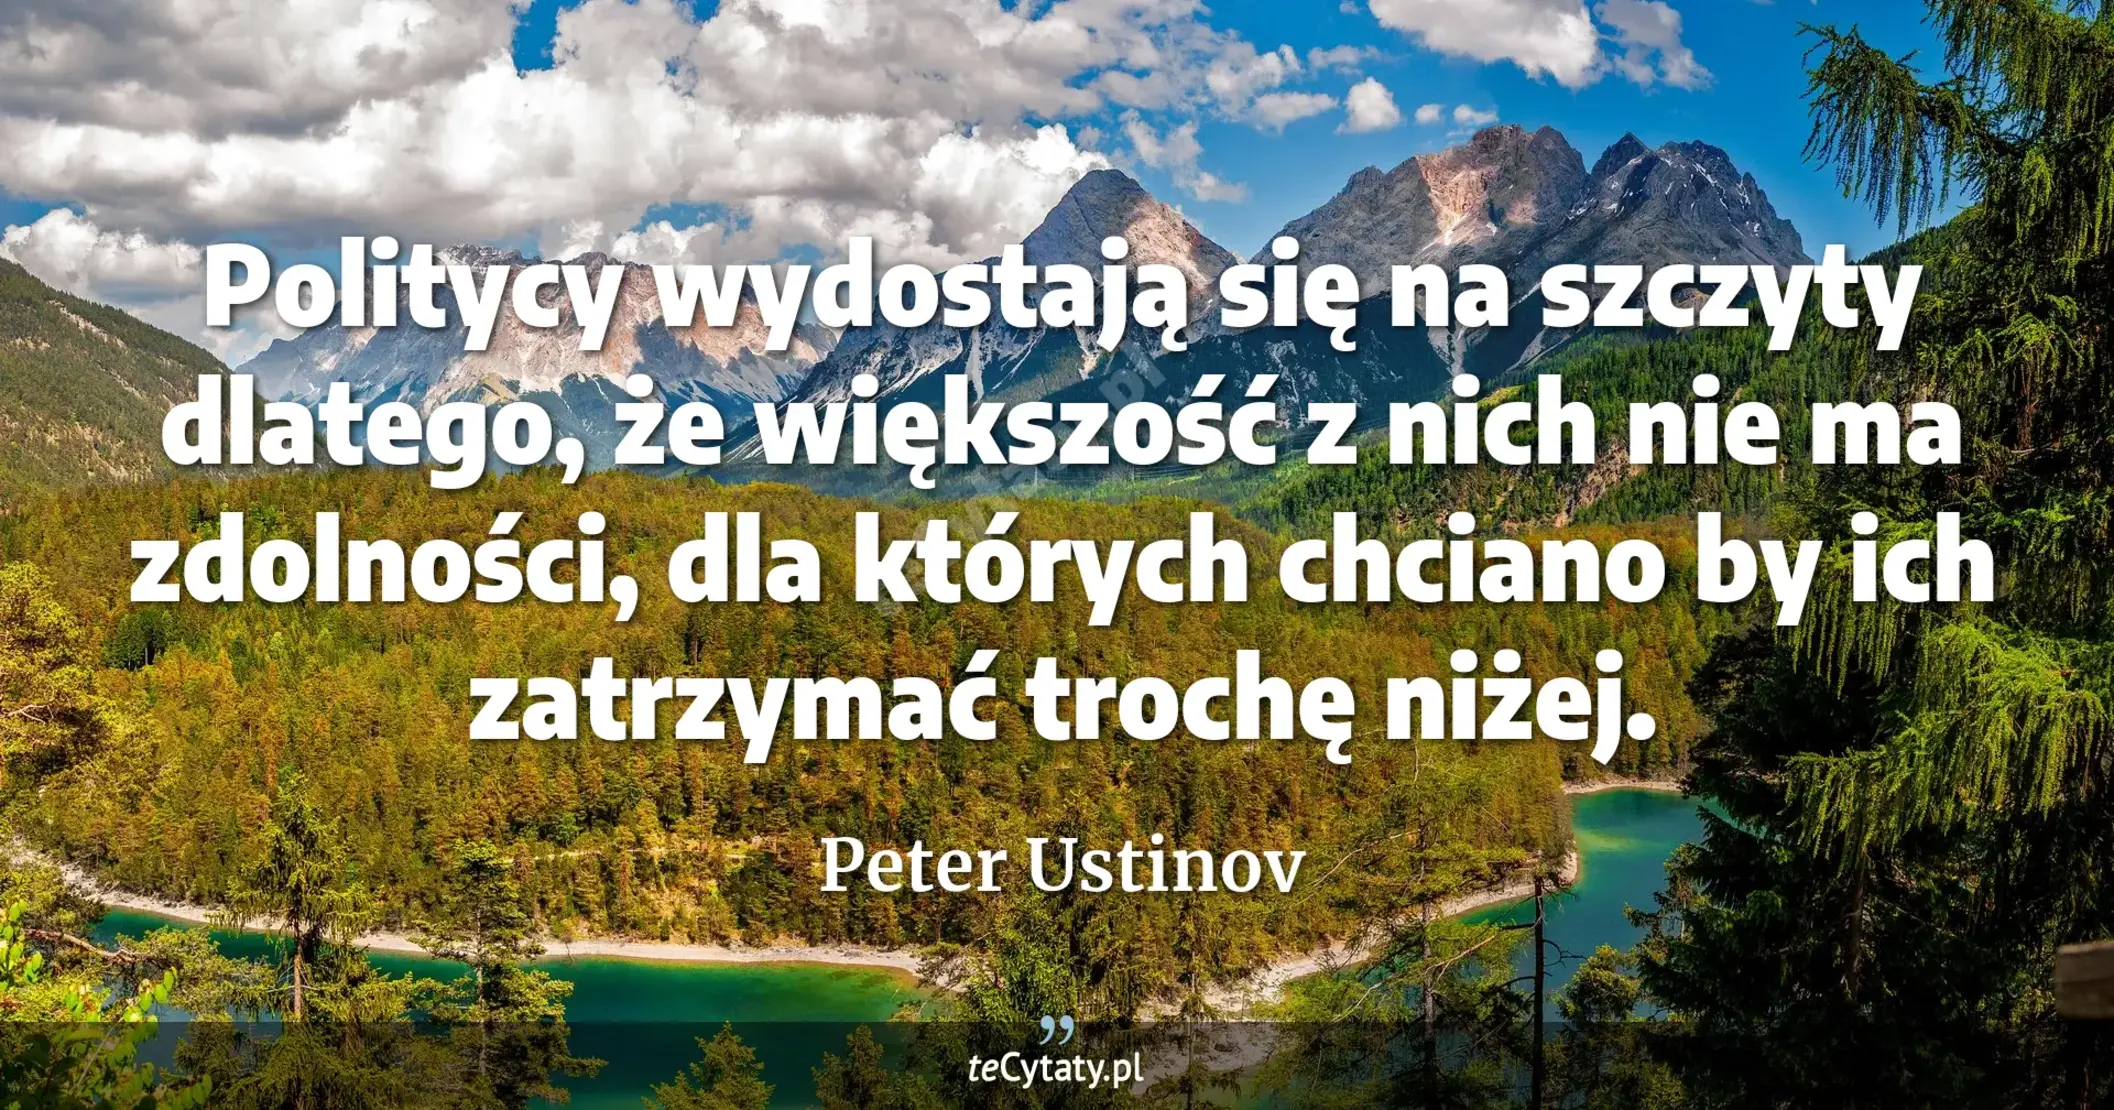 Politycy wydostają się na szczyty dlatego, że większość z nich nie ma zdolności, dla których chciano by ich zatrzymać trochę niżej. - Peter Ustinov